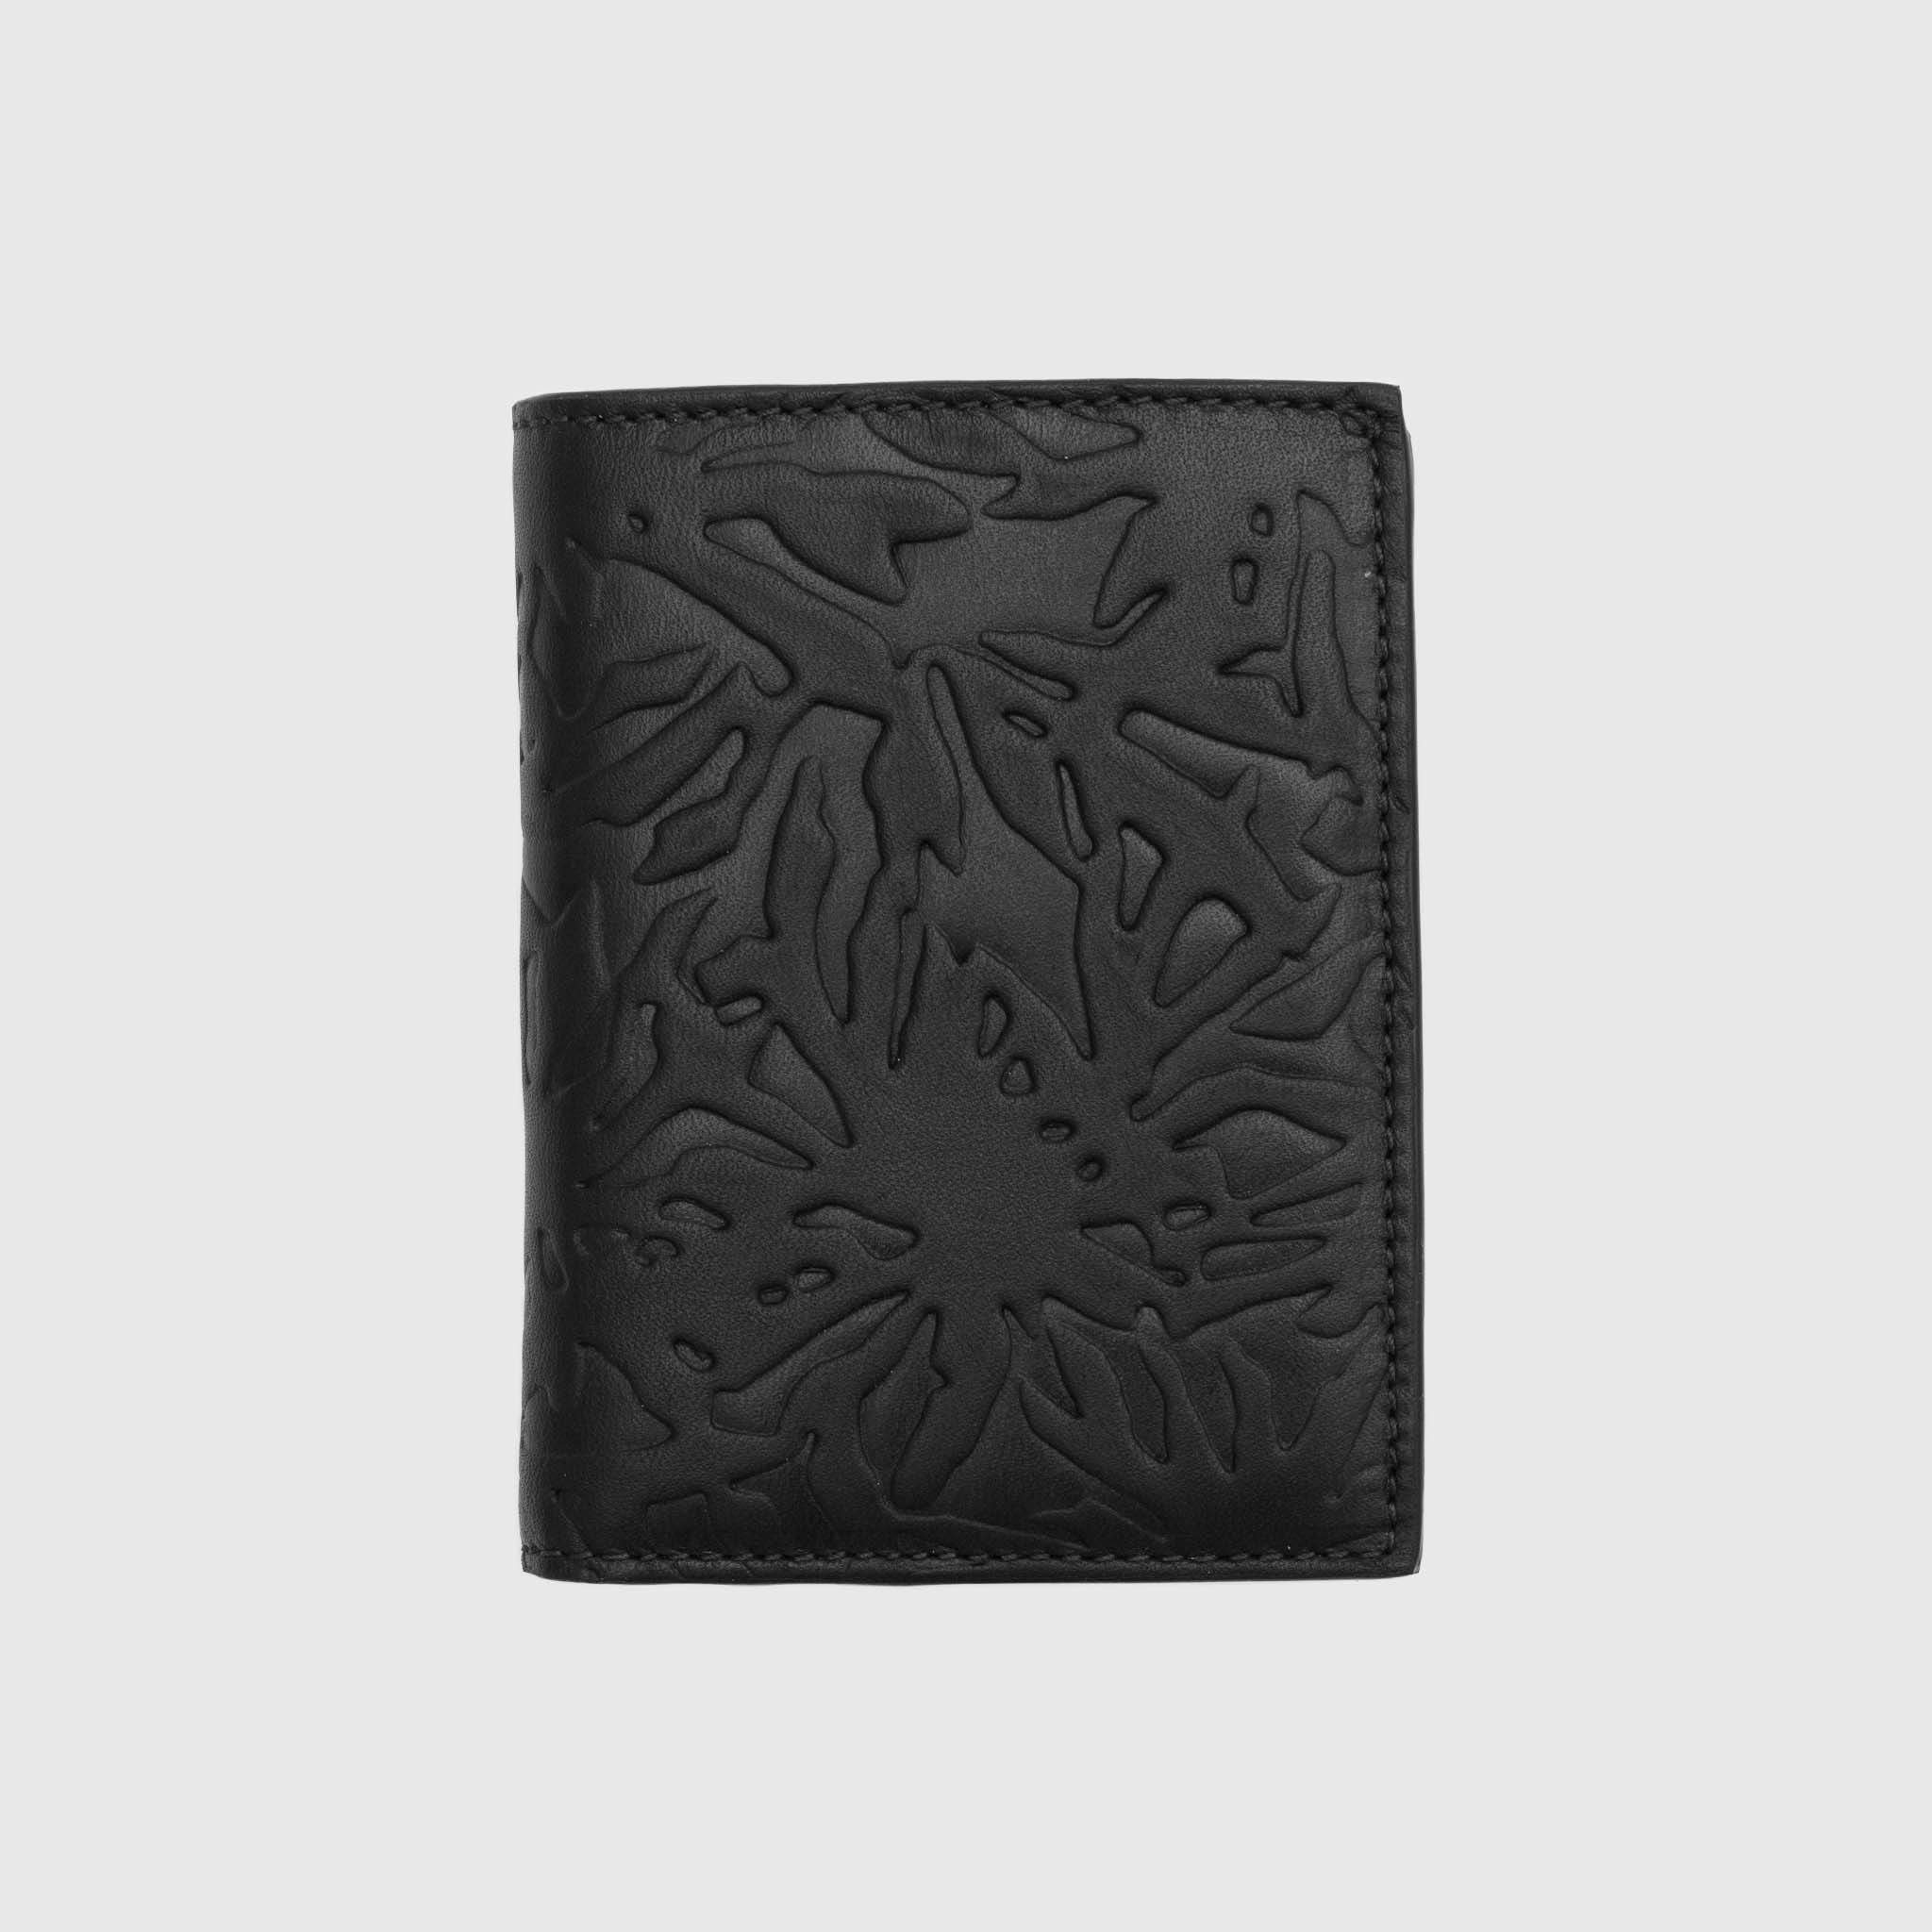 lv black embossed wallet